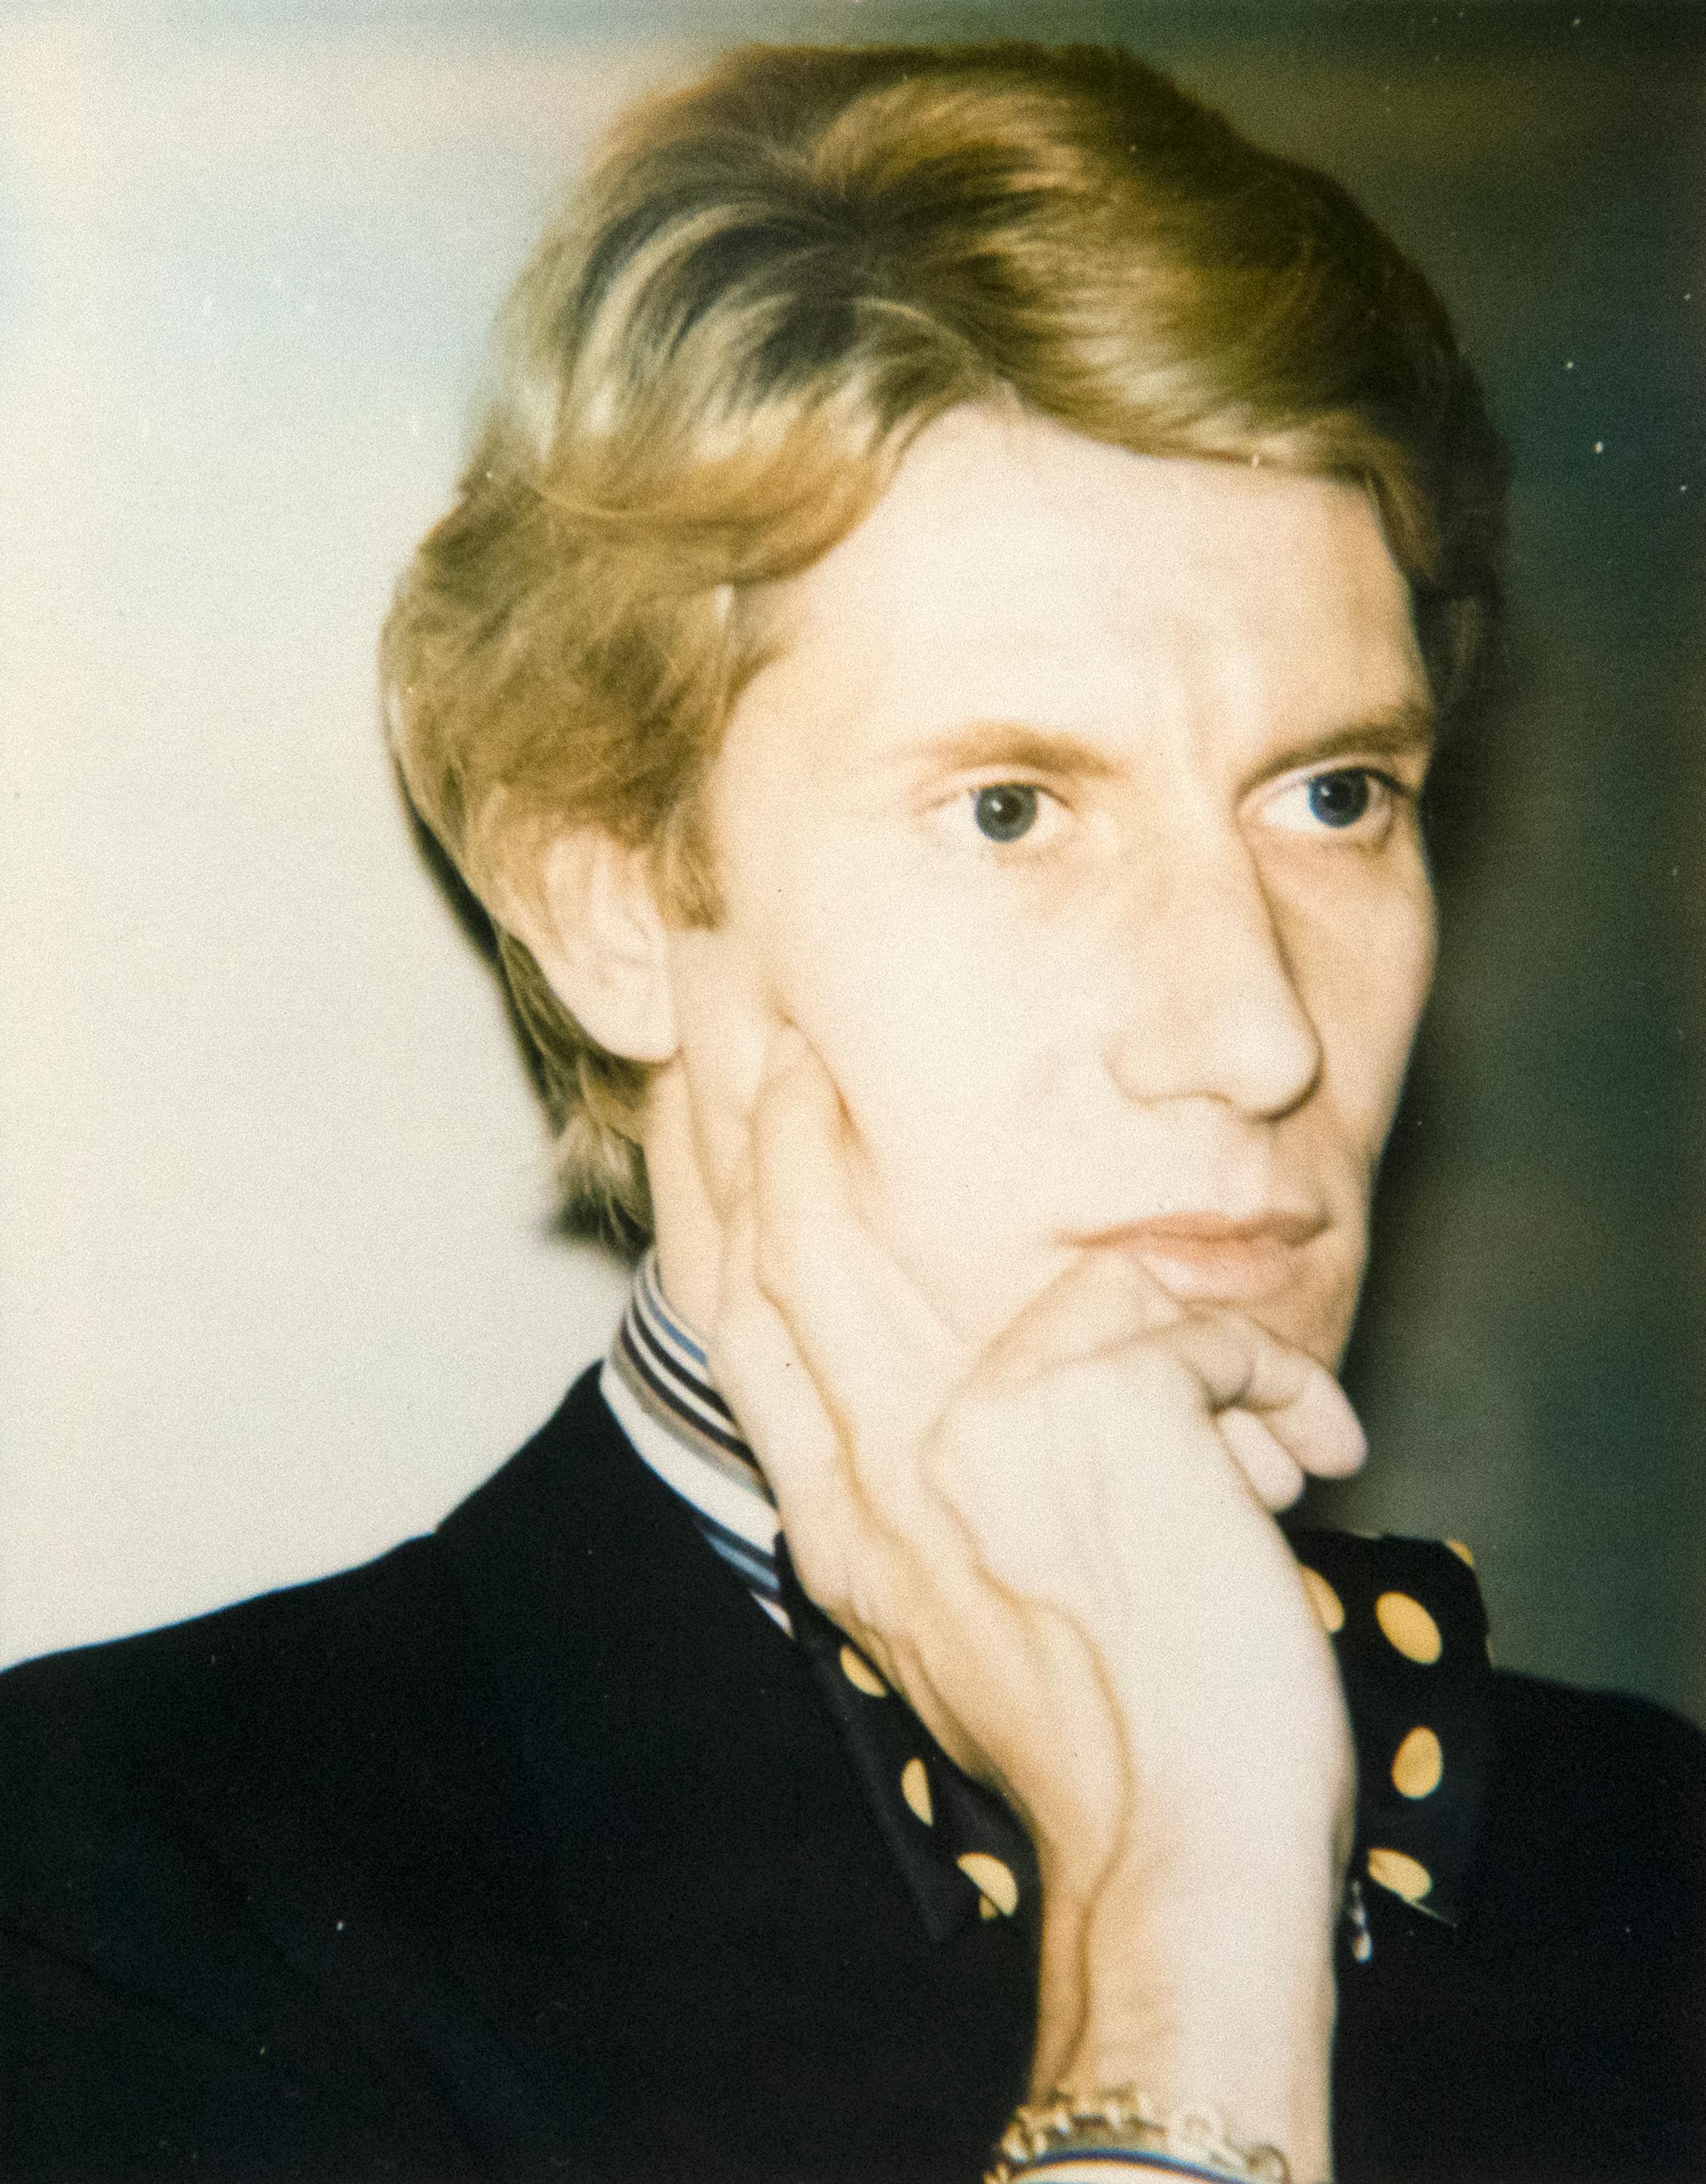 Andy Warhol Portrait Photograph - Yves Saint Laurent